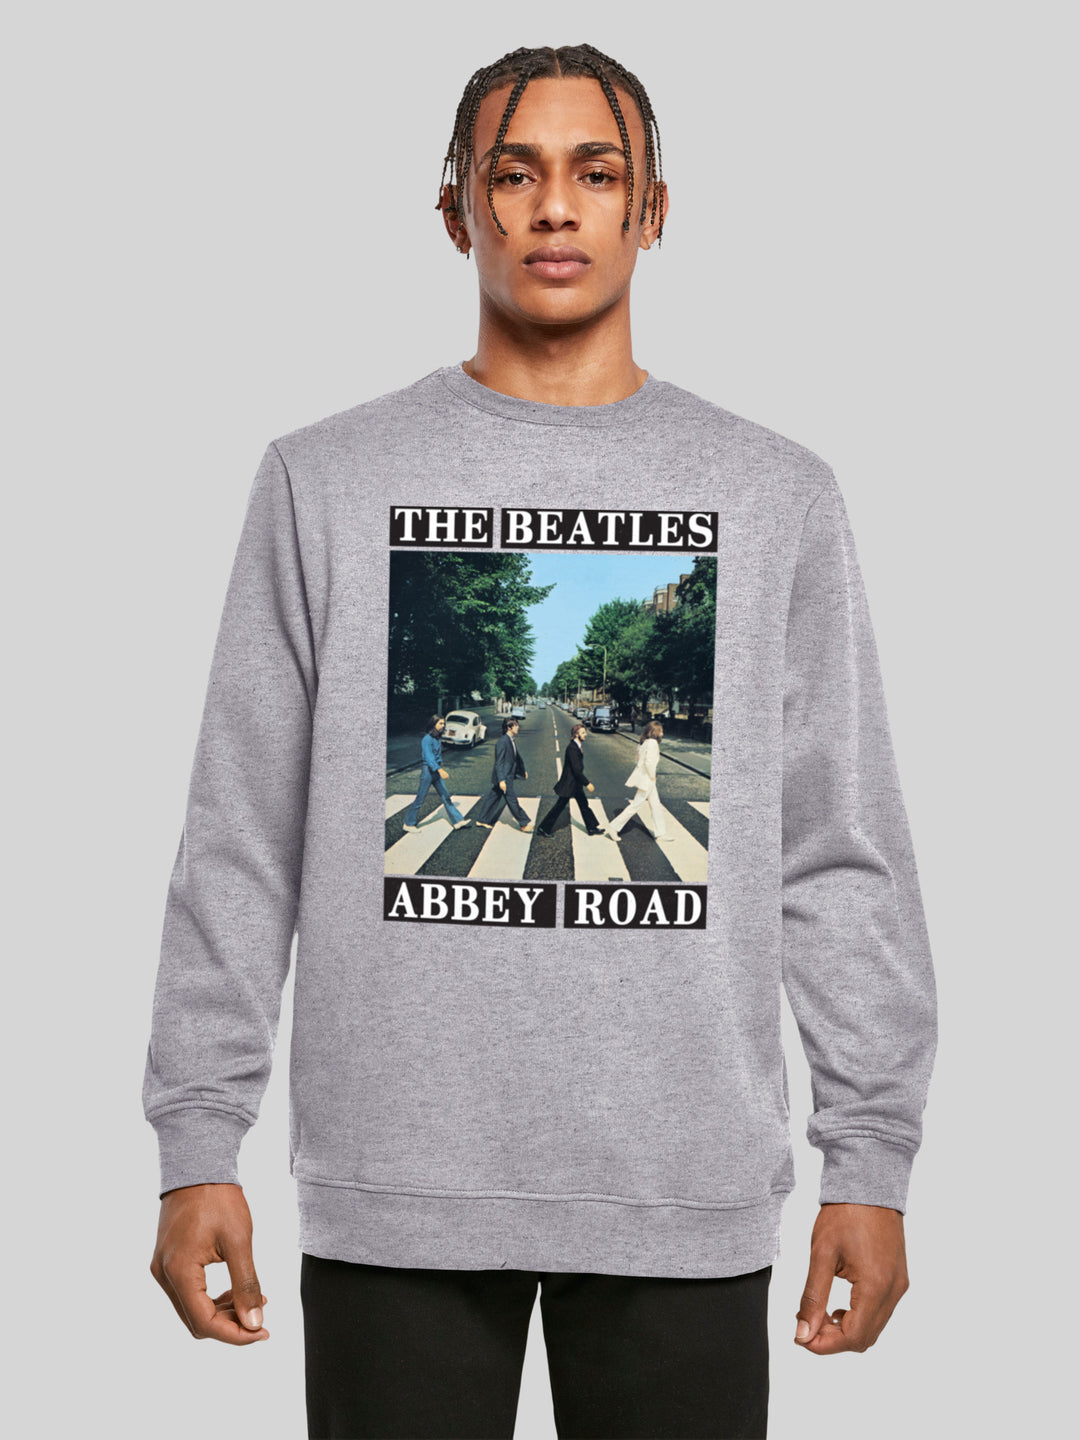 | | Longsleeve Men – Road Sweatshirt Sweater F4NT4STIC Abbey Beatles The